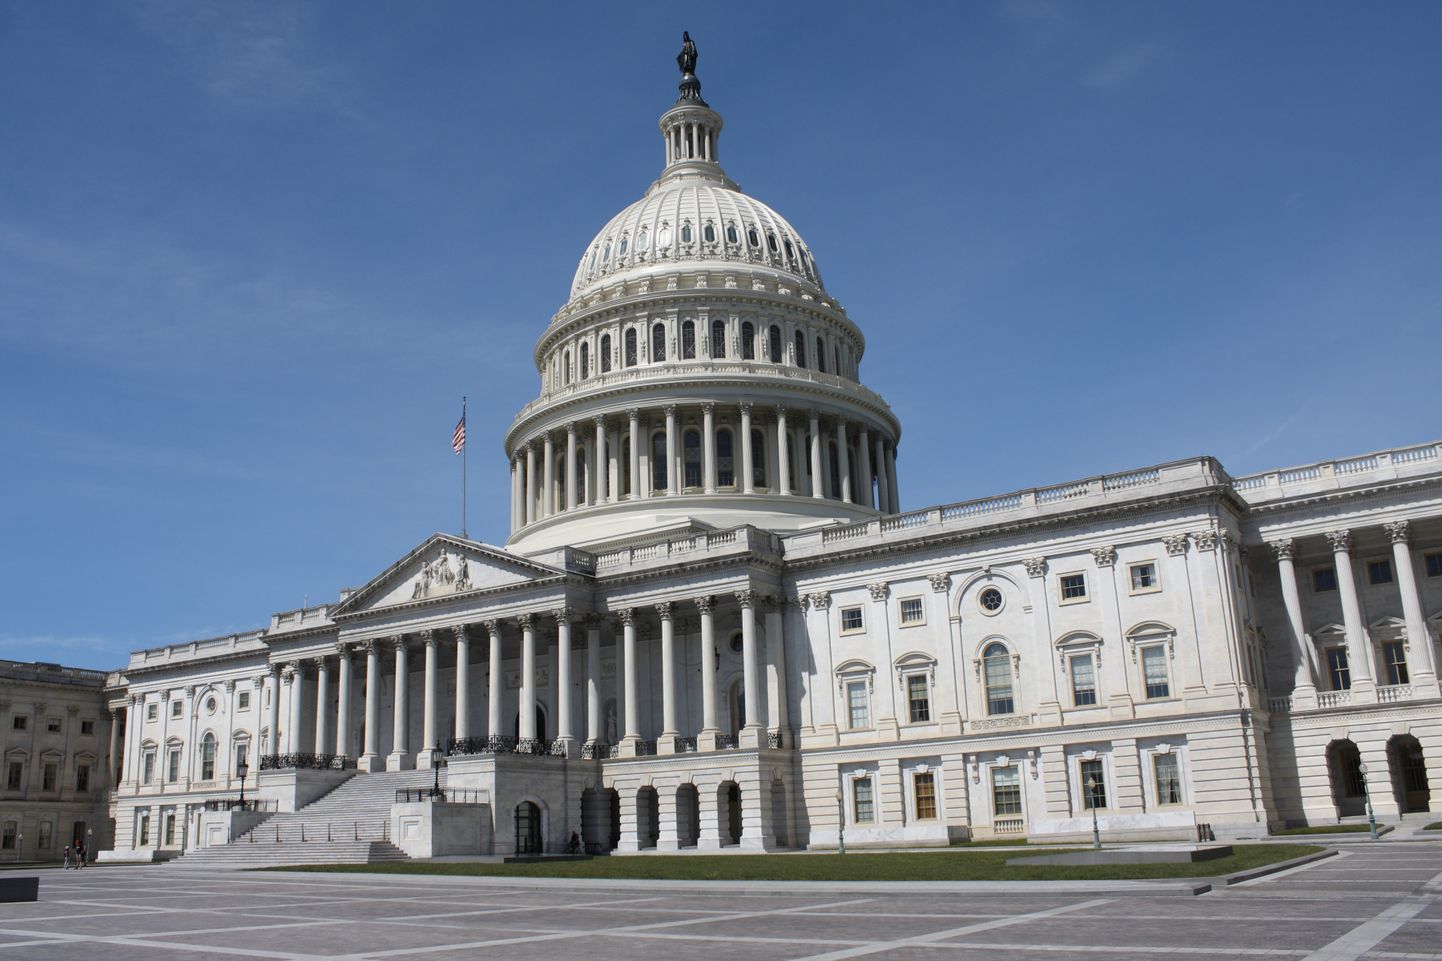 Ameerika Ühendriikide Kongress peab oma istungeid pealinnas Washingtonis asuvas Kapitooliumis.